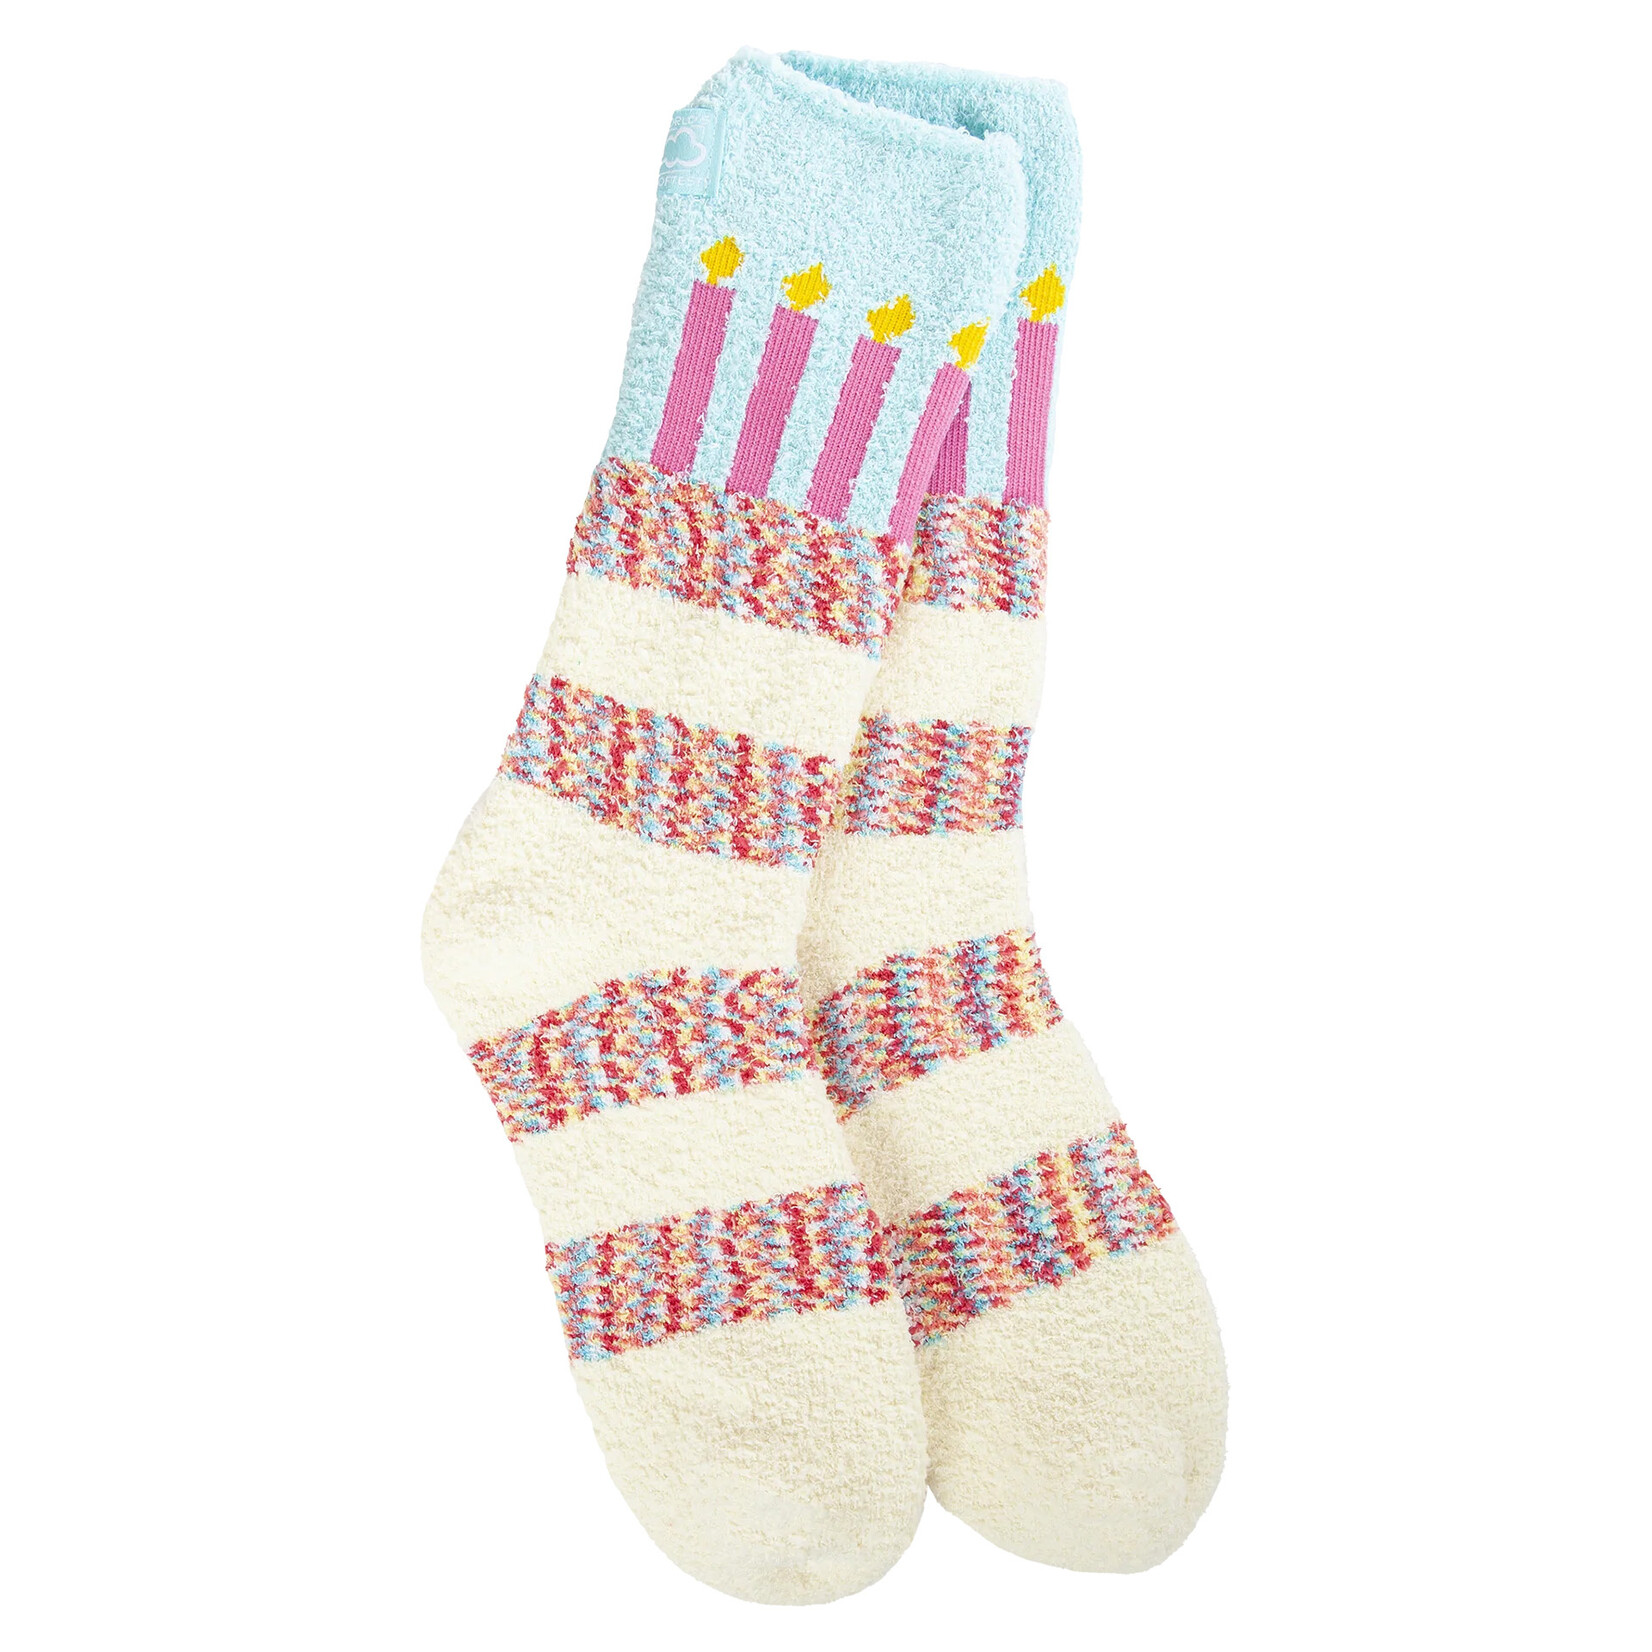 World's Softest Sock (WSCZCRW):